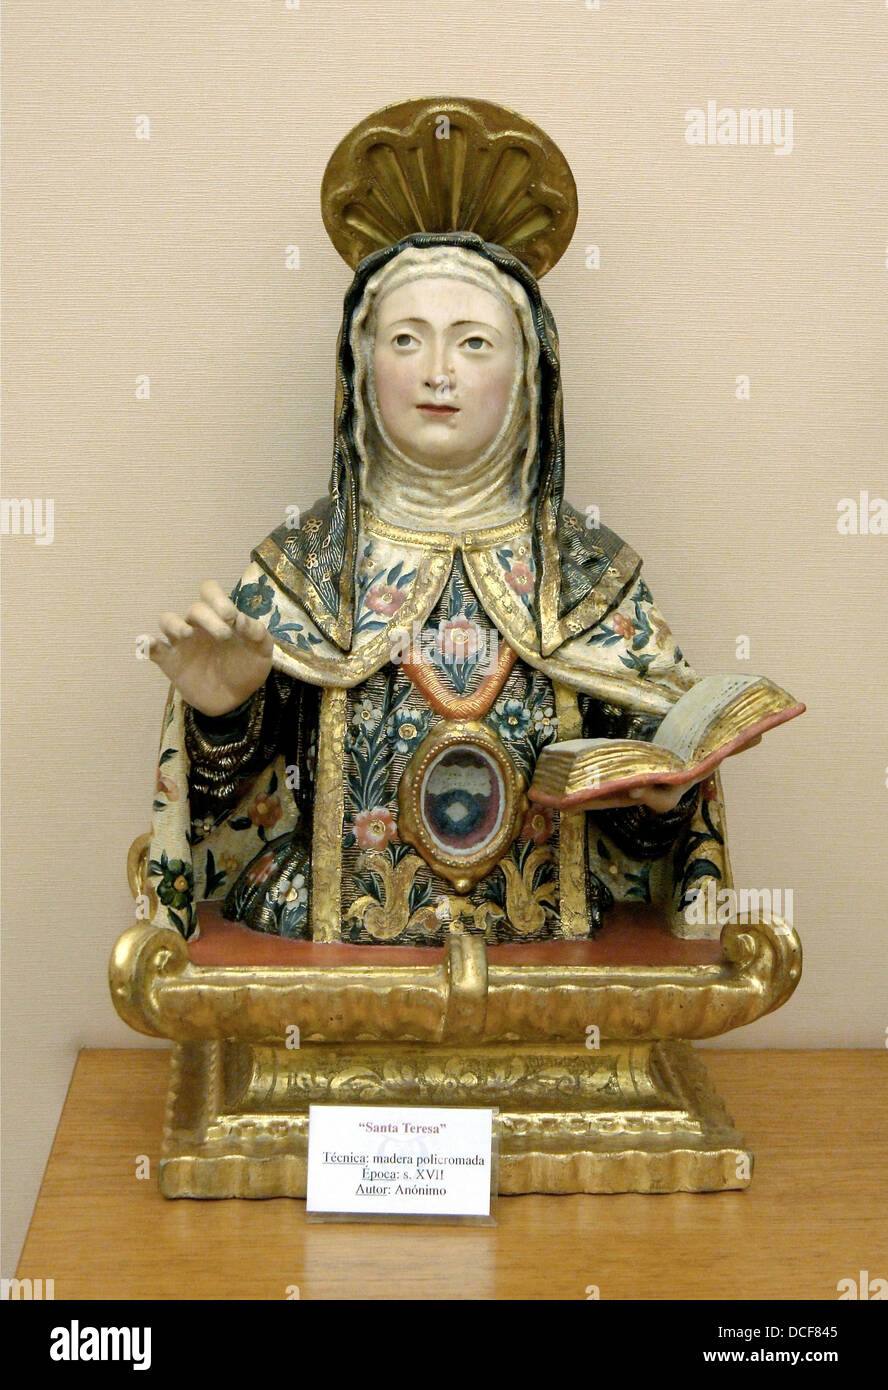 Heilige Teresa von Avila, Reliquiar, Polychrom Holz, 17. Jahrhundert, anonym. Schatz der Kathedrale von Guadix, Andalusien, Spanien Stockfoto